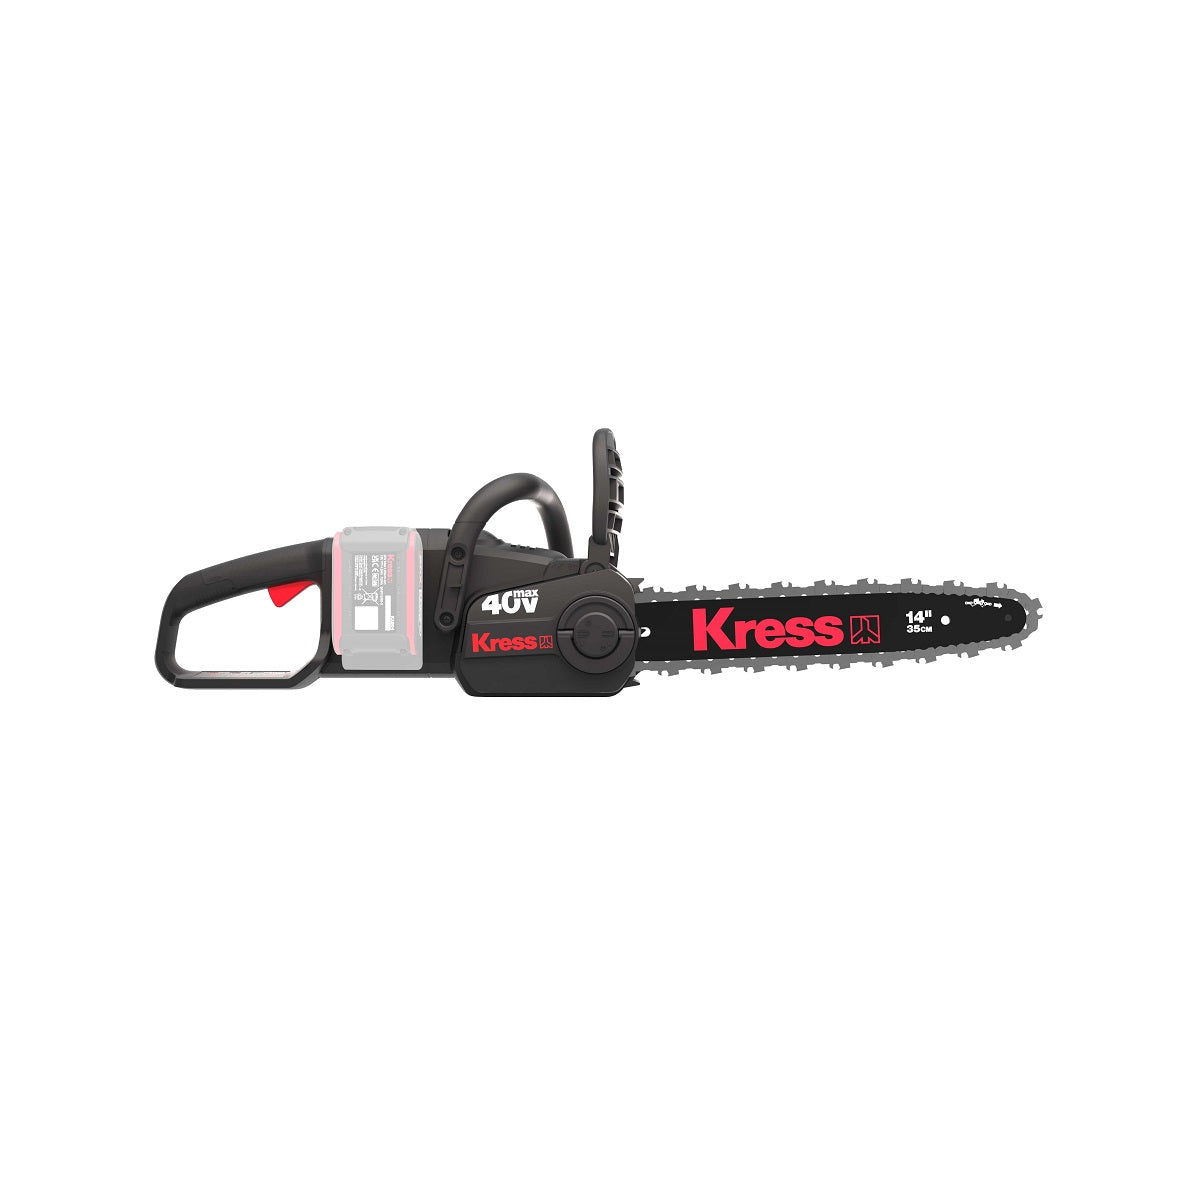 Kress KG346.9 40V 35cm Brushless Chainsaw - Tool Only